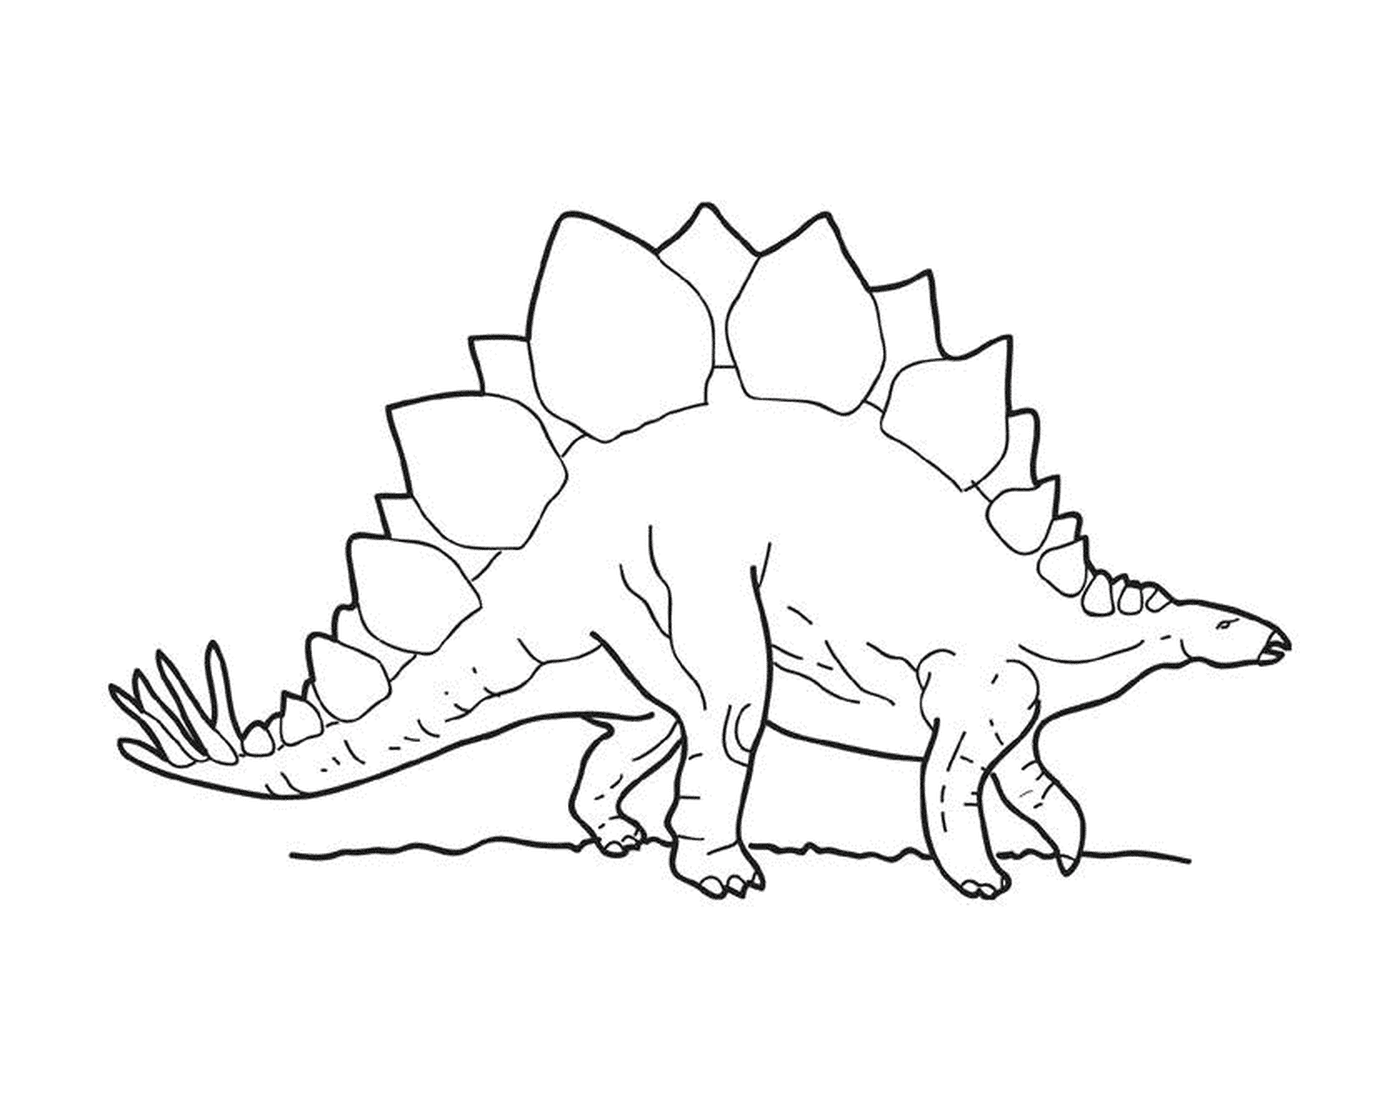   Stégosaure debout sur ses pattes arrière 